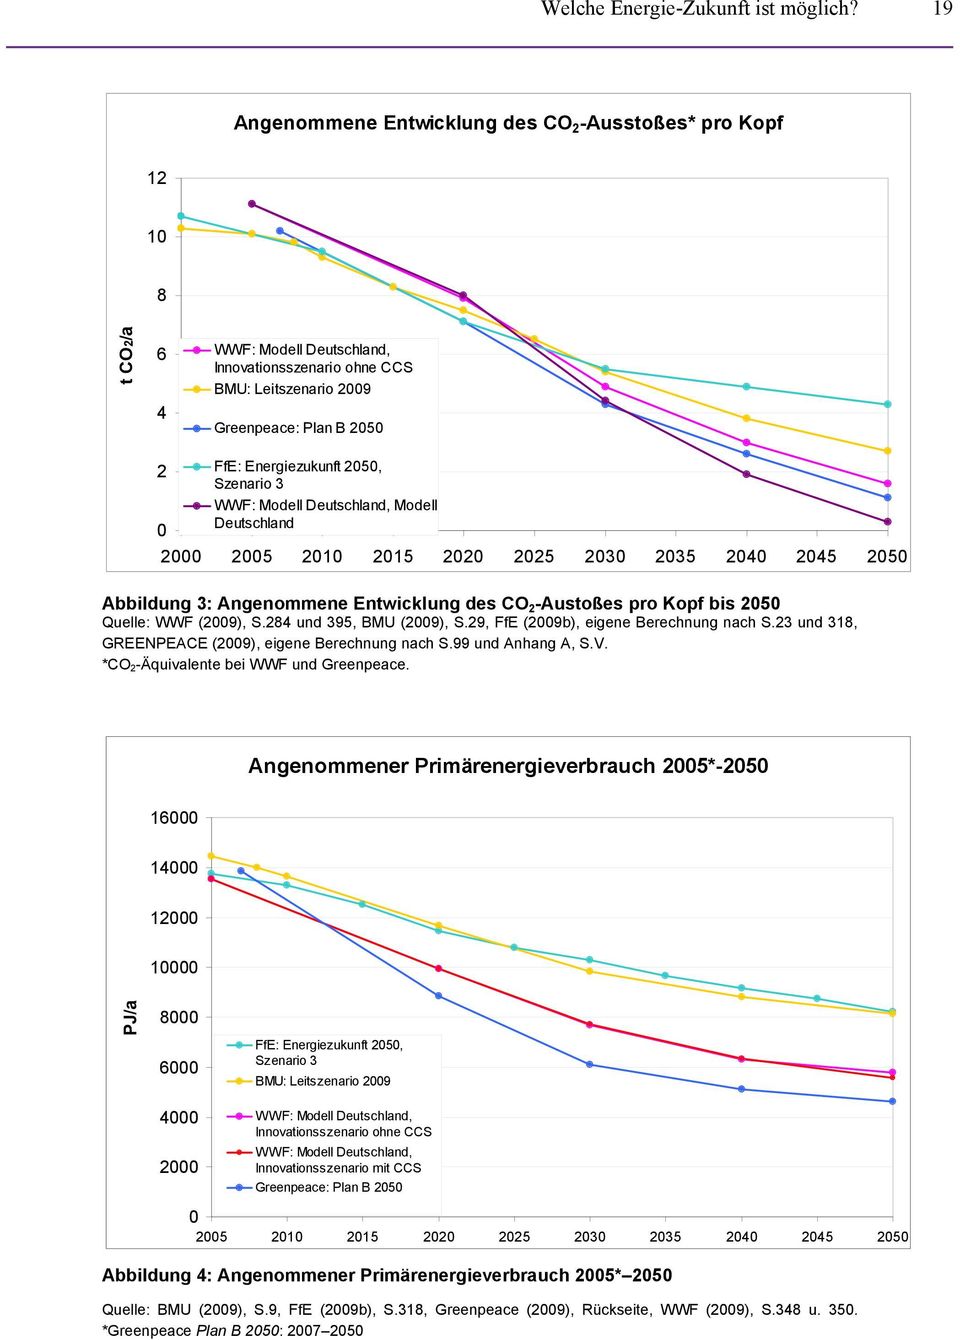 Energiezukunft 2050, Szenario 3 WWF: Modell Deutschland, Modell Deutschland 2000 2005 2010 2015 2020 2025 2030 2035 2040 2045 2050 Abbildung 3: Angenommene Entwicklung des CO 2 -Austoßes pro Kopf bis